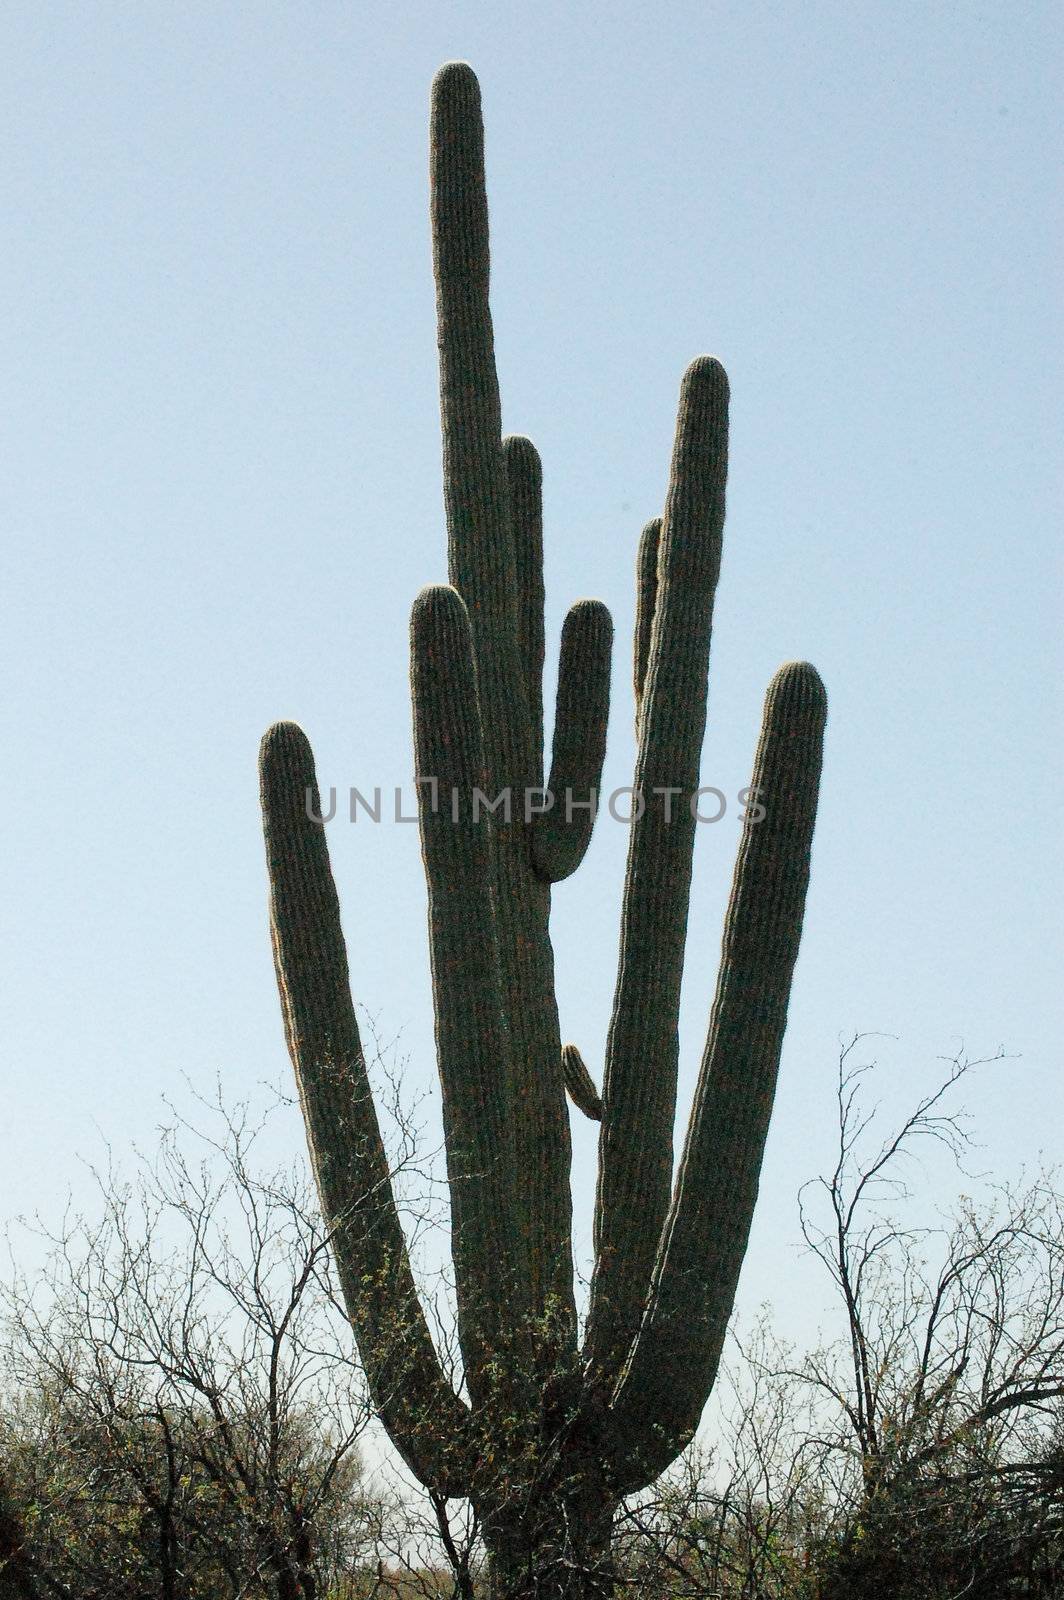 Cactus Hand.JPG by RefocusPhoto